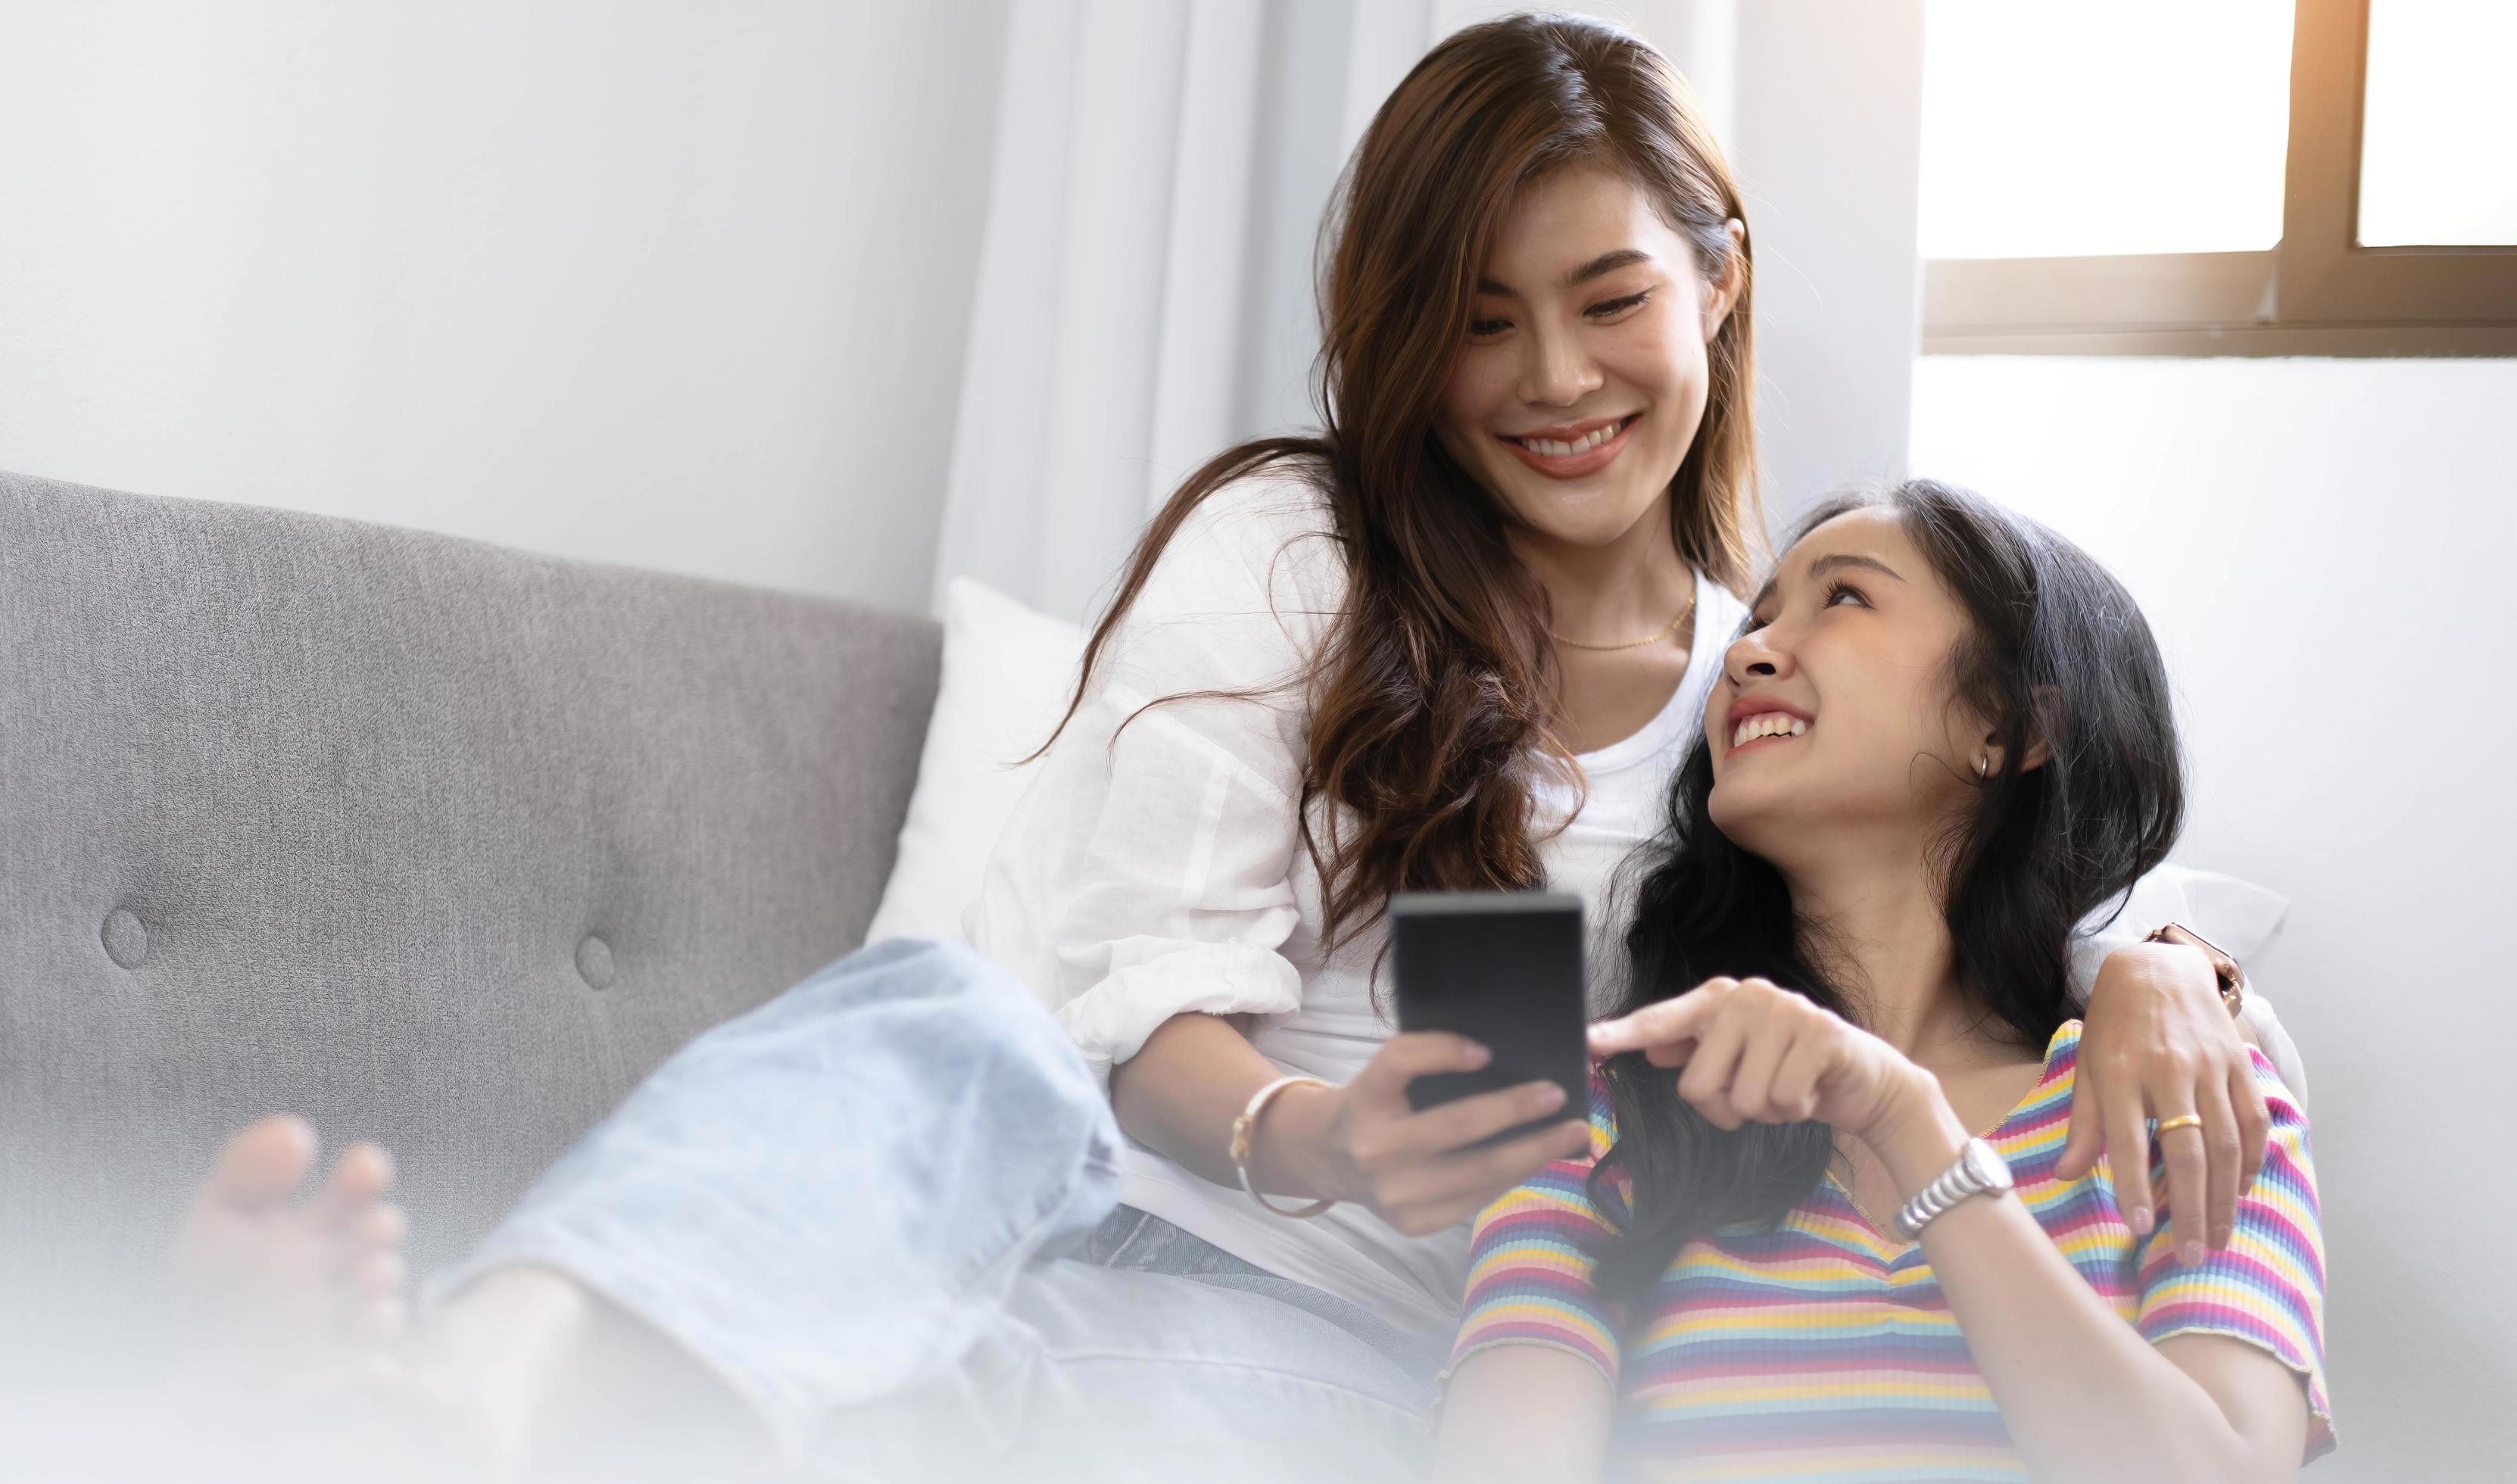 jonge mooie Aziatische vrouwen lesbisch koppel minnaar met behulp van smartphone video-oproep online in de woonkamer op de bank thuis met lachende face.concept van lgbt seksualiteit met gelukkige levensstijl samen foto